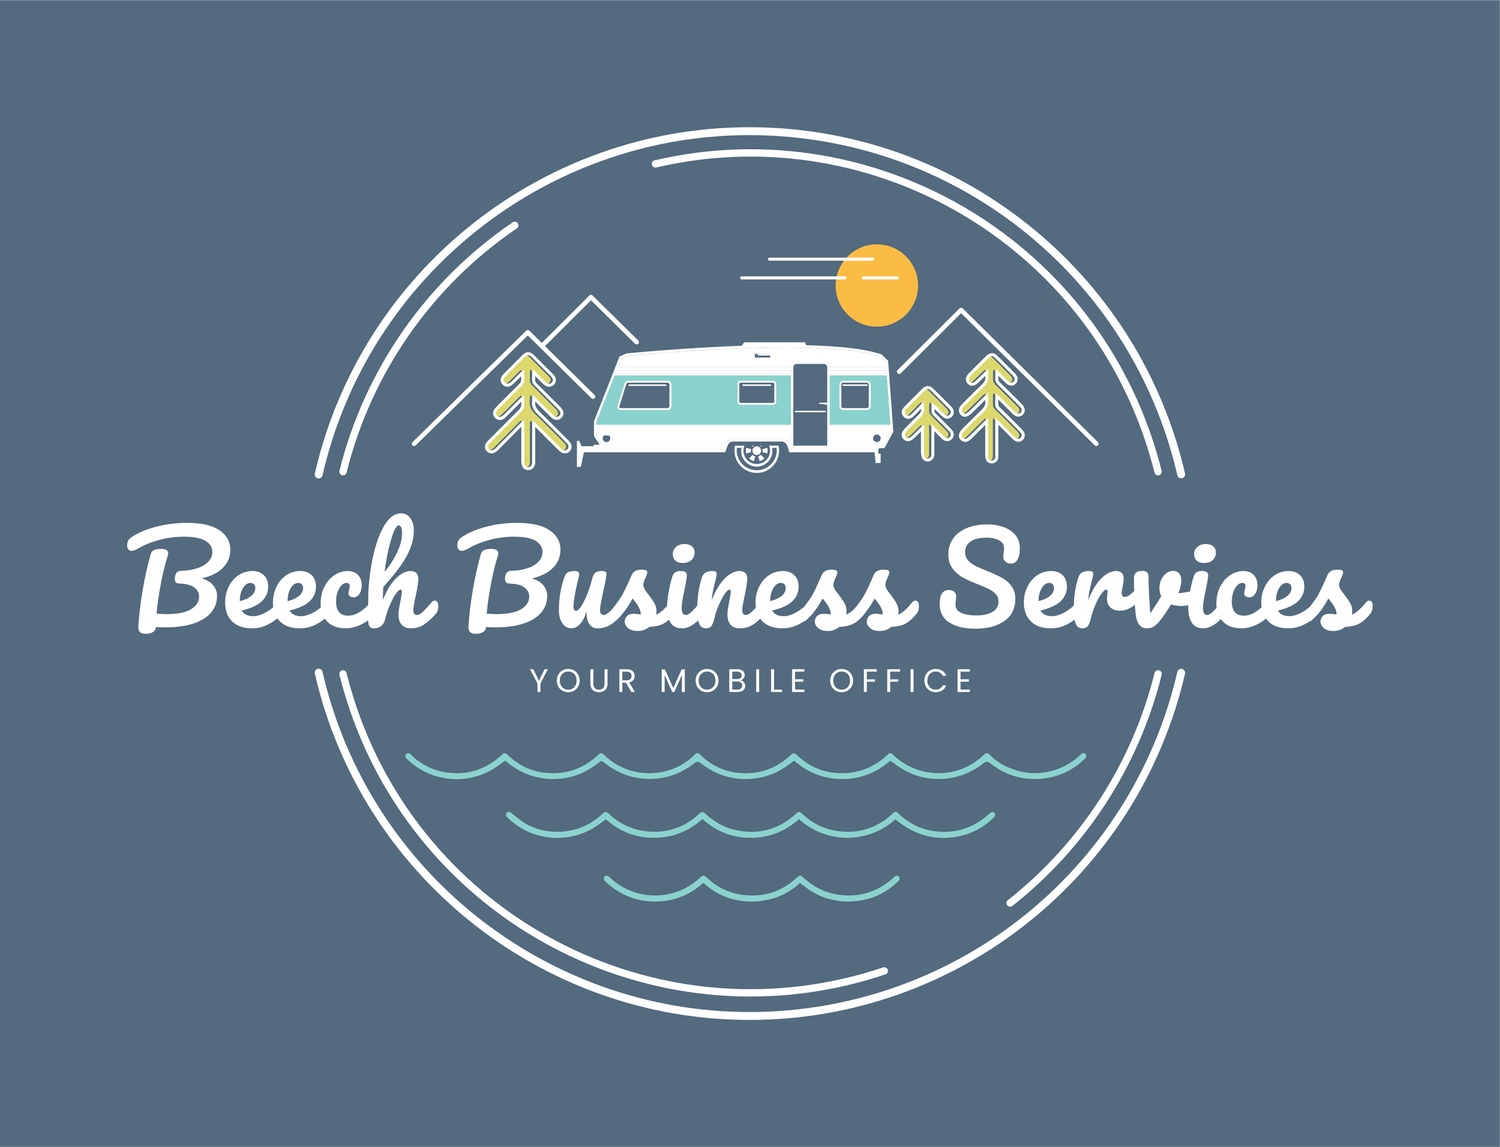 Beech Business Services